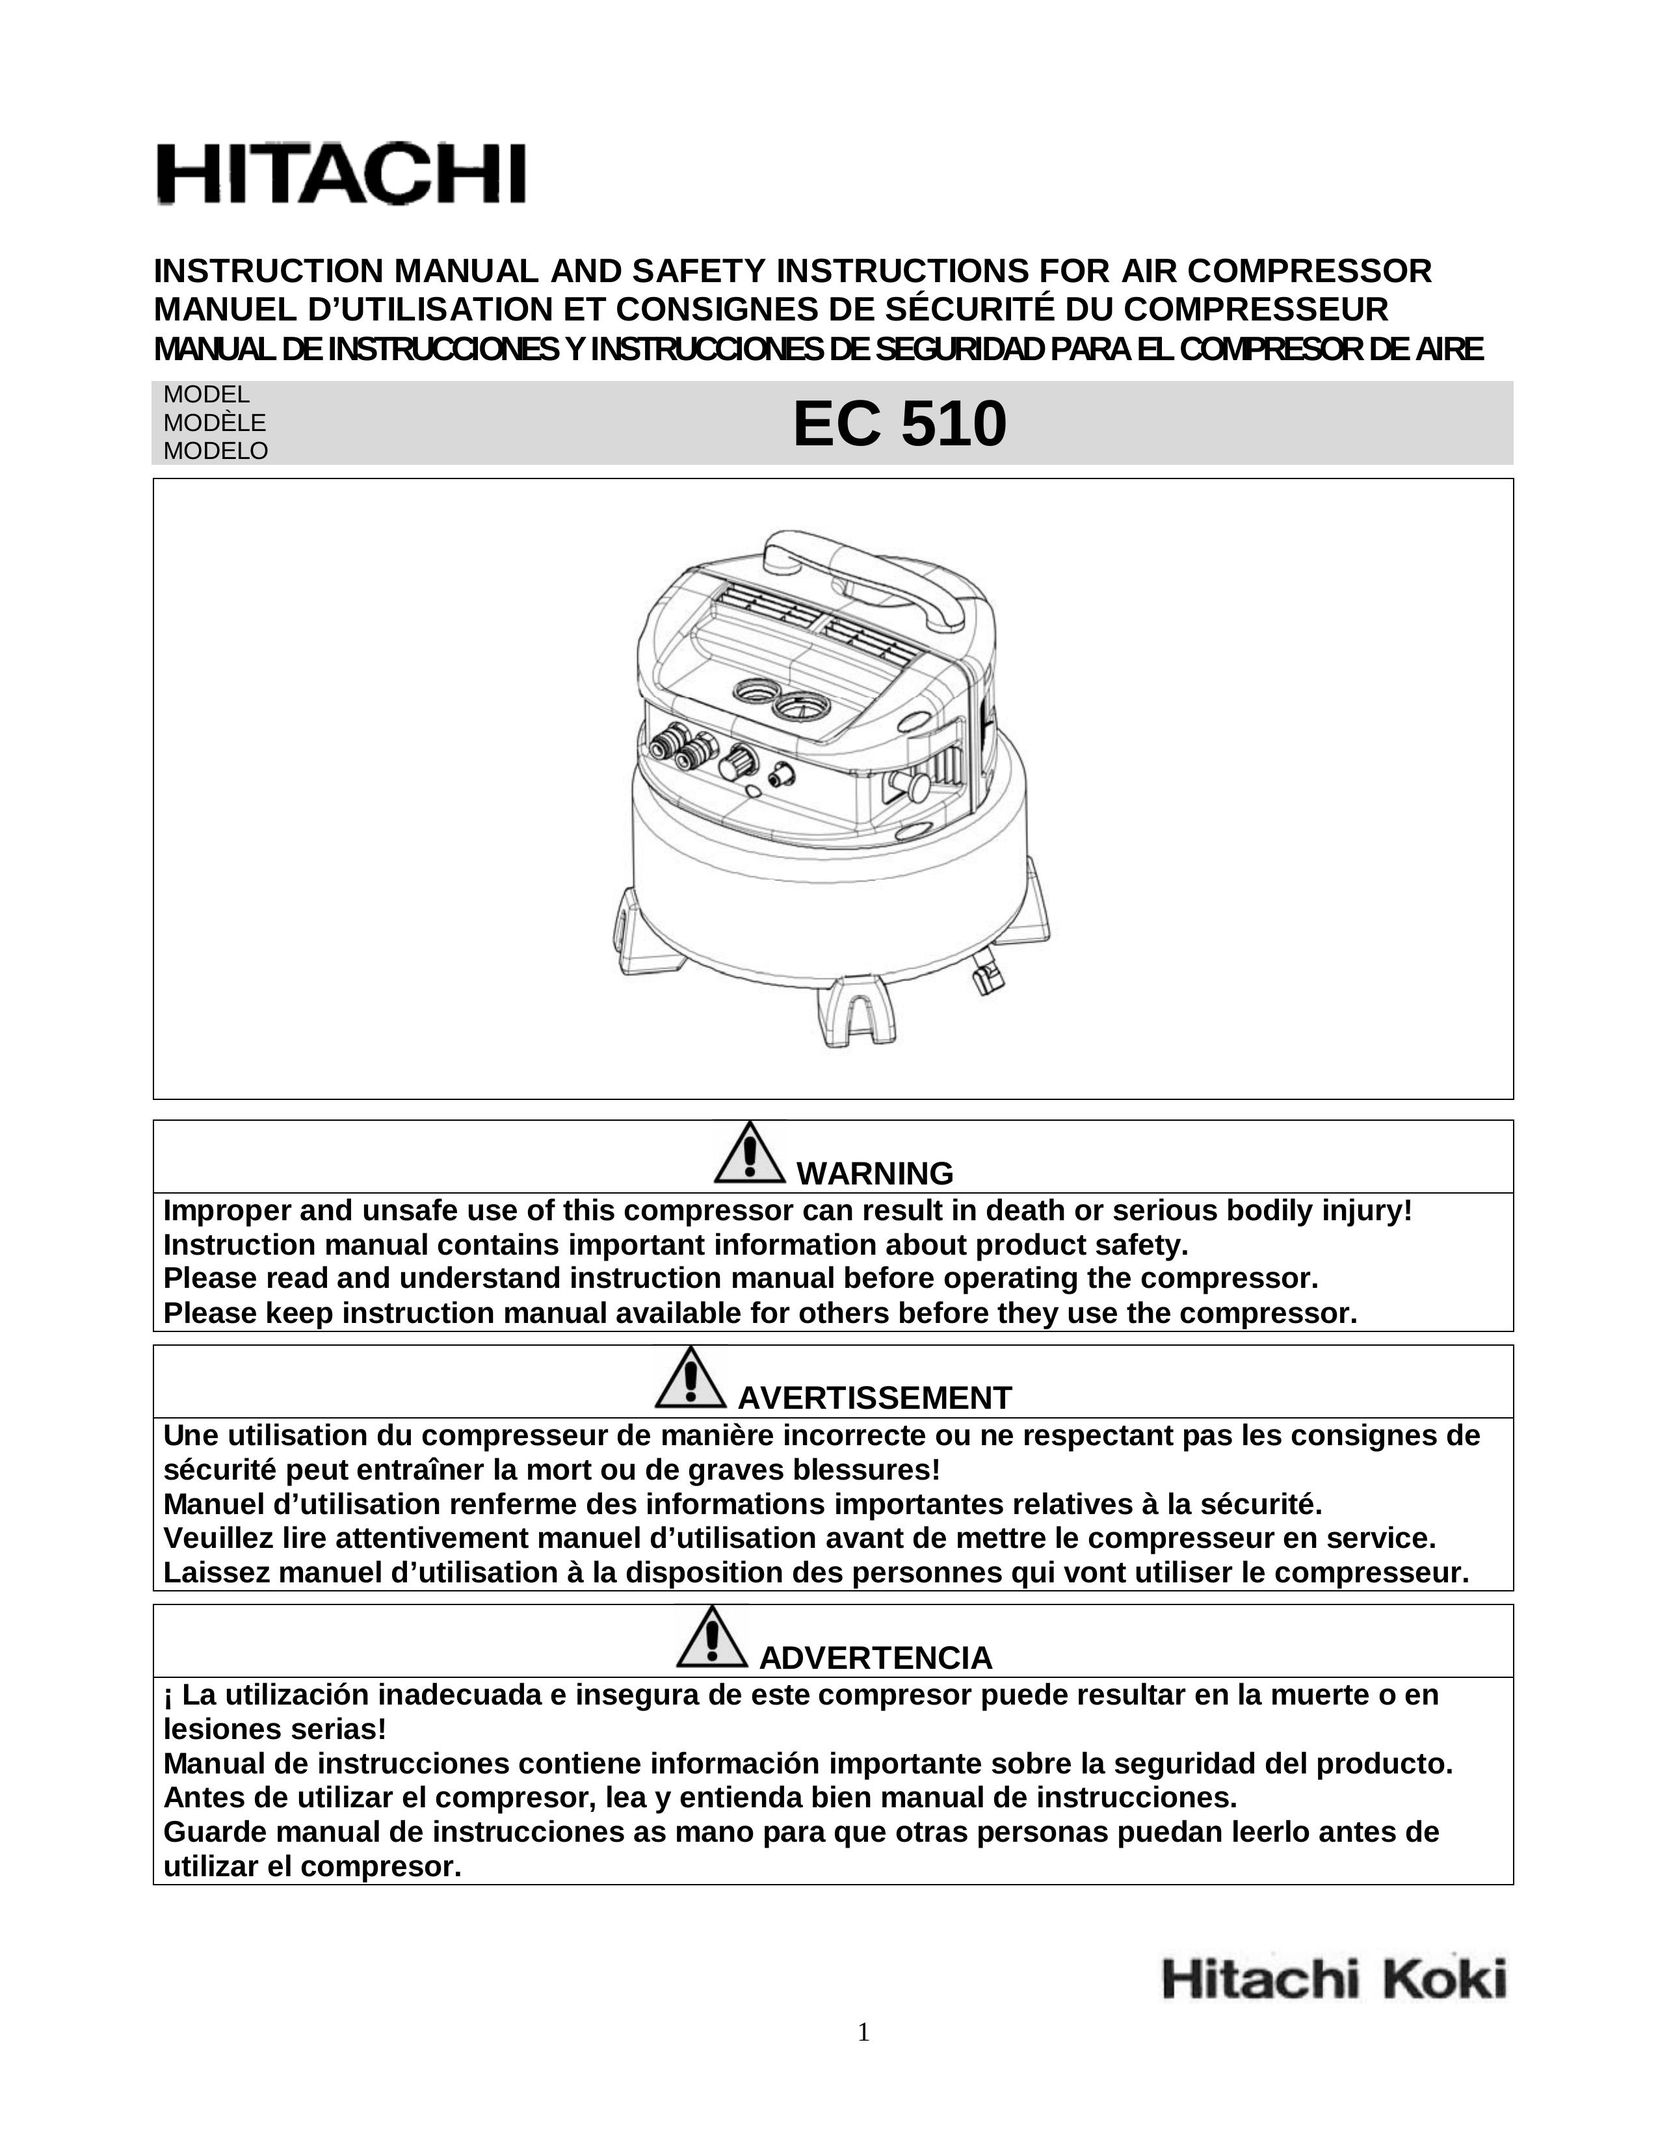 Hitachi EC 510 Air Compressor User Manual